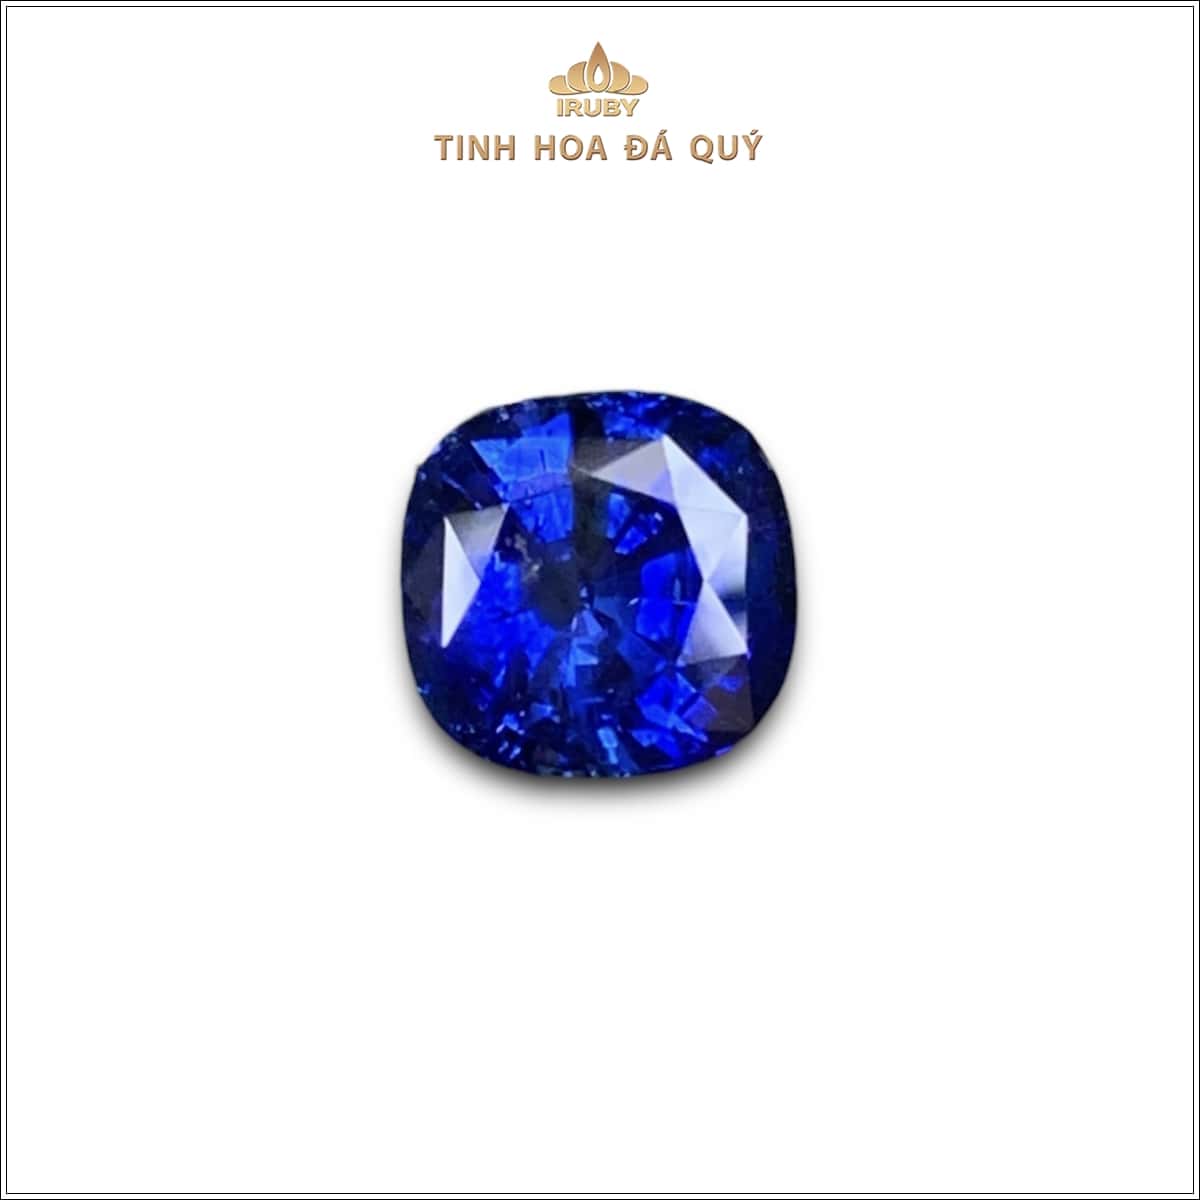 Viên Sapphire màu xanh lam hoàng gia 3,25ct - IRSP 235325